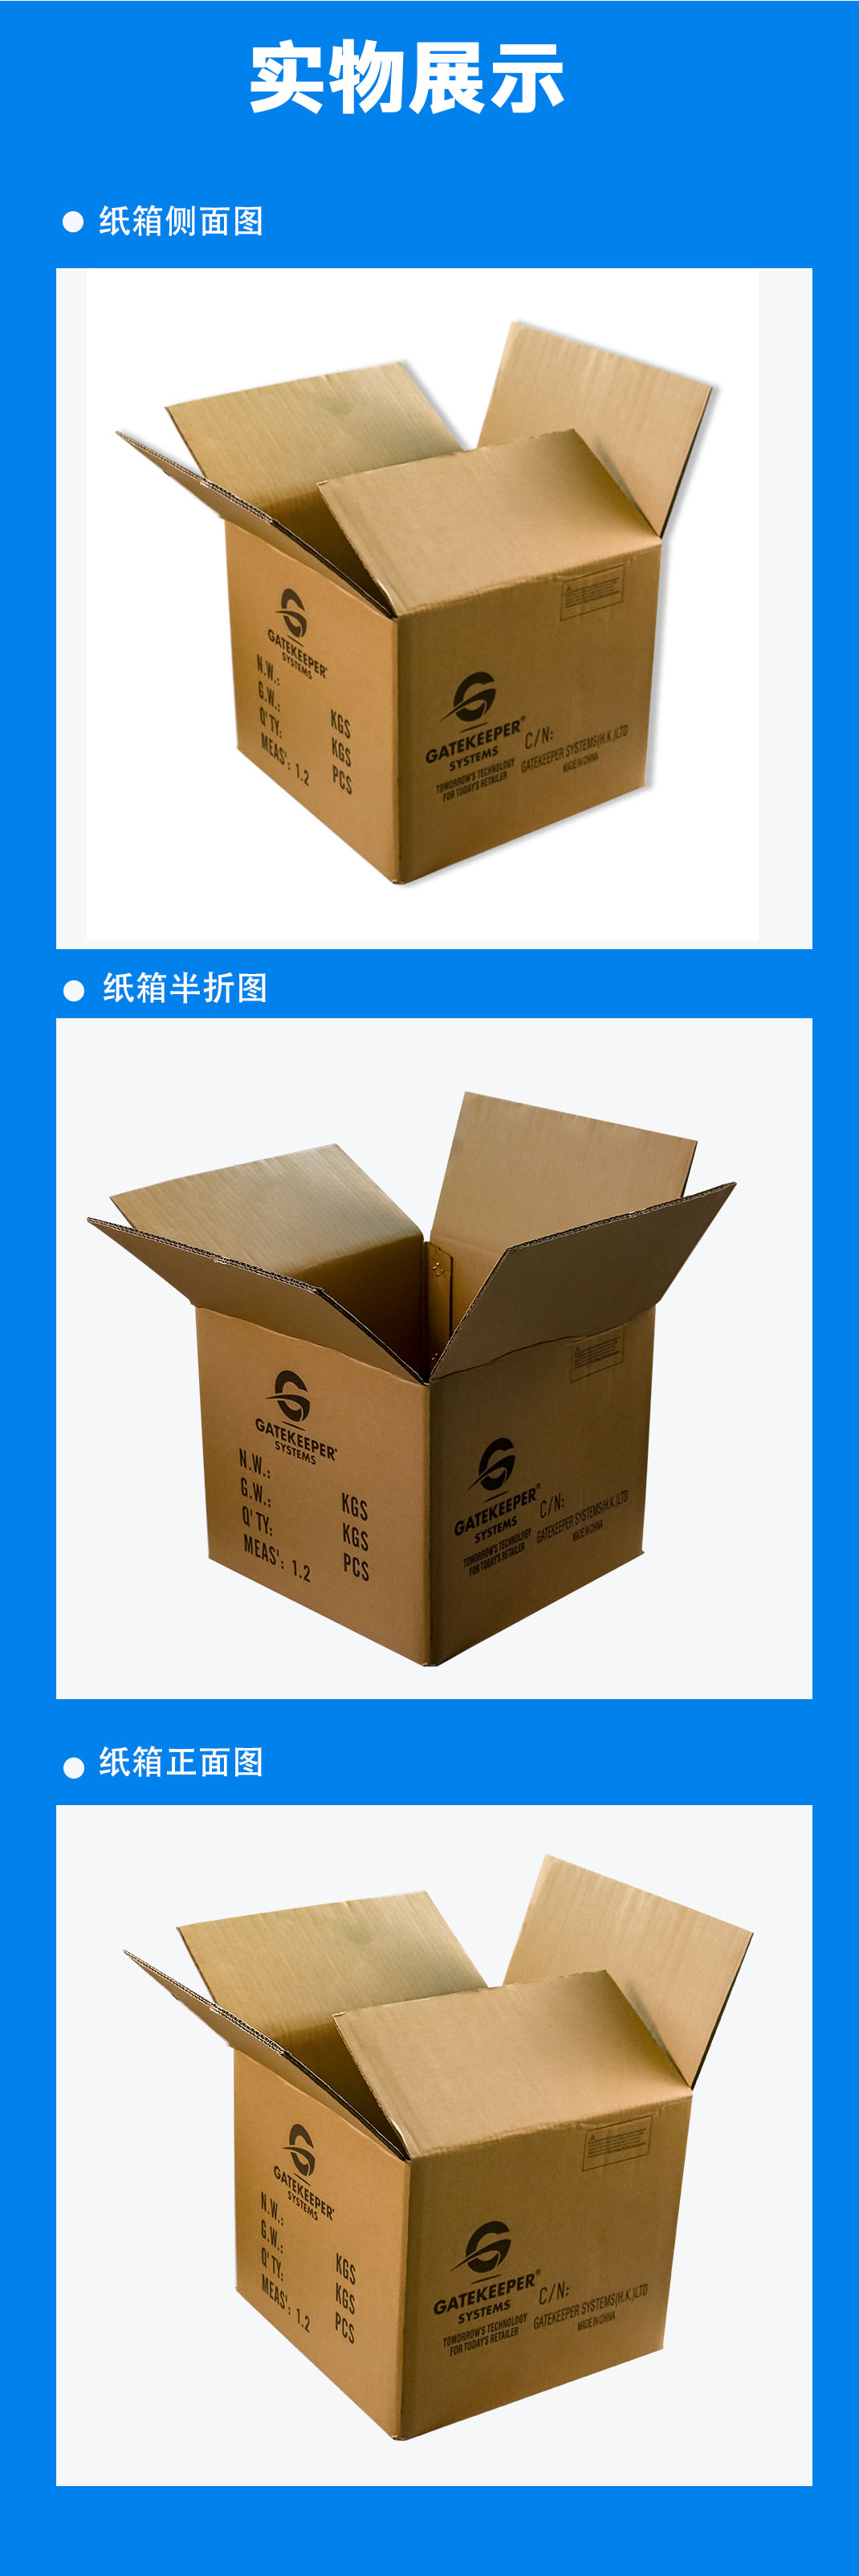 吉林纸箱常用的印刷分类